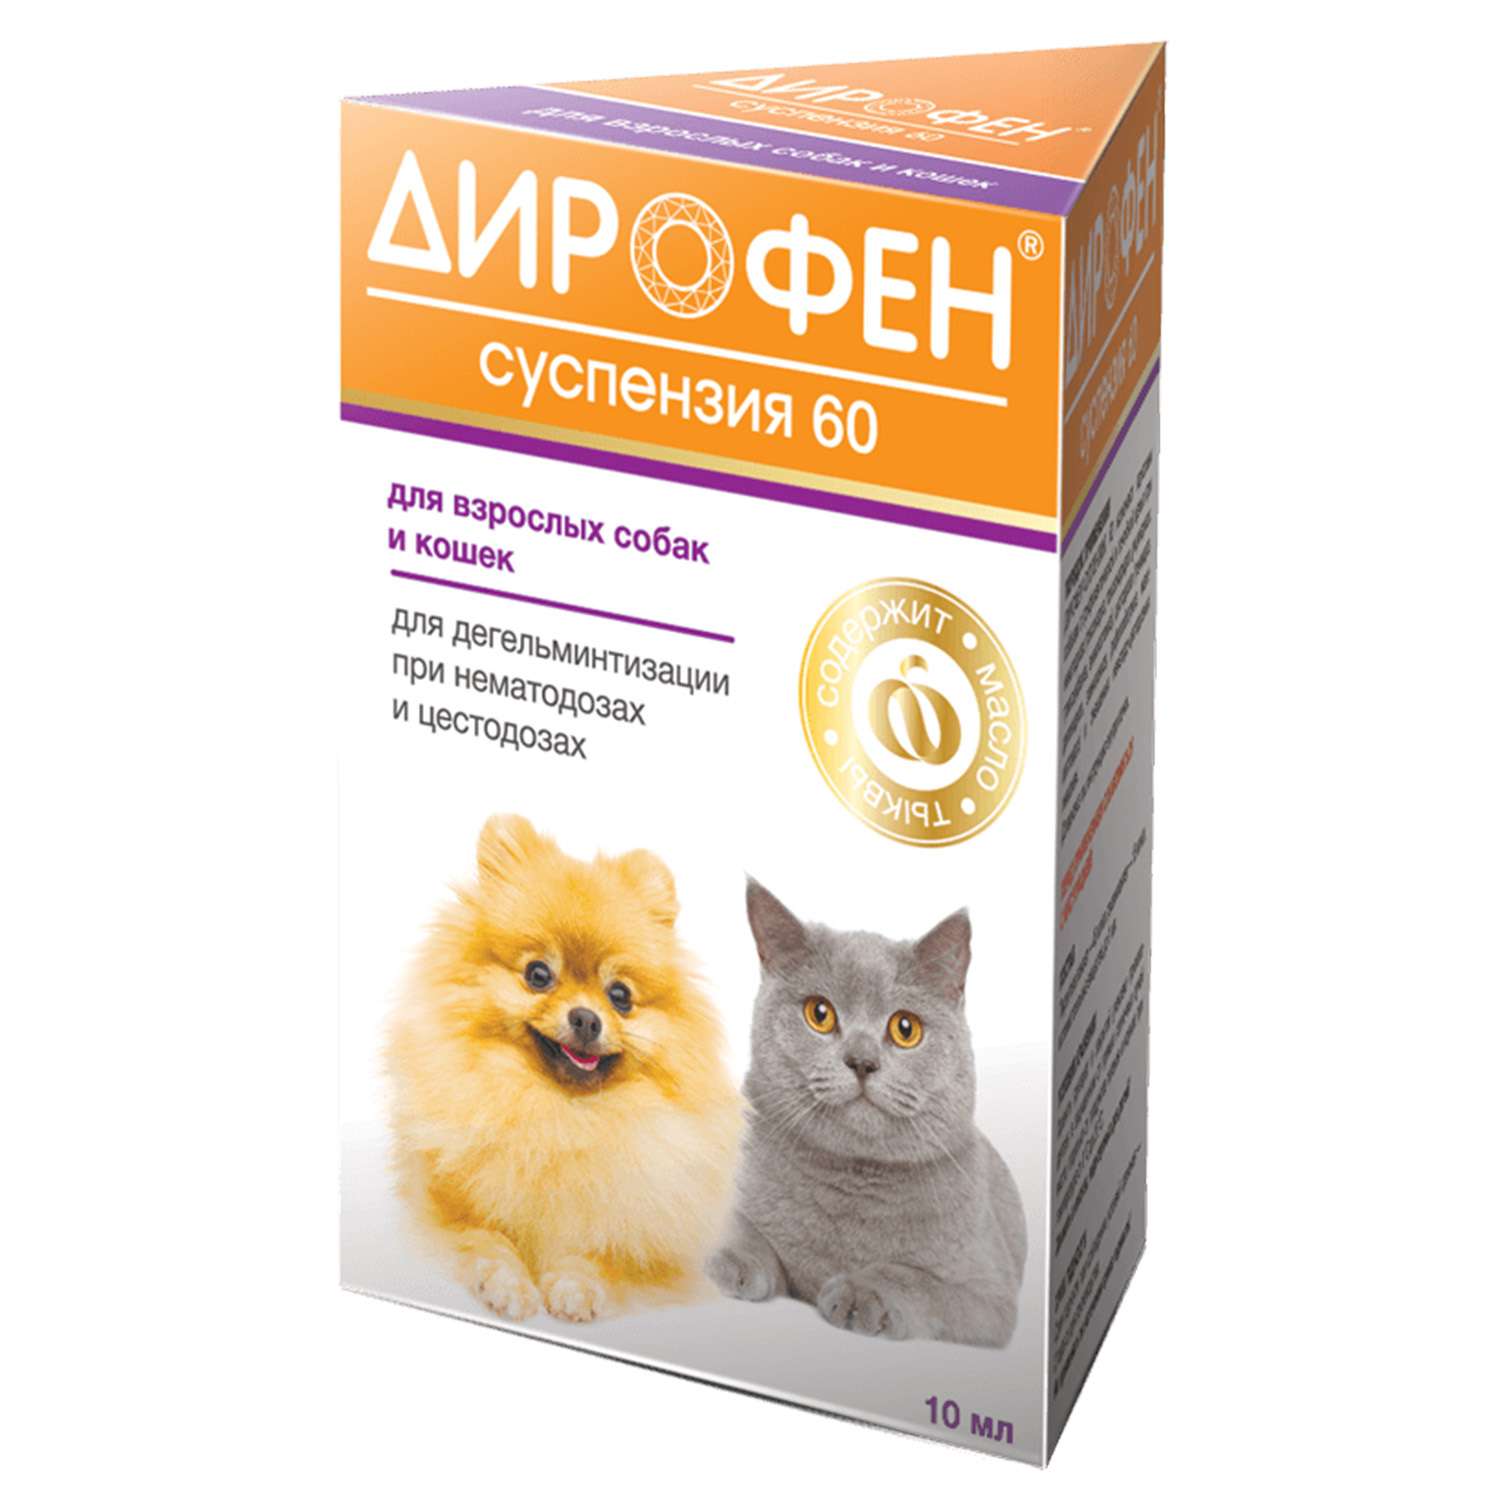 Препарат противопаразитарный для собак и кошек Apicenna Дирофен-суспензия 60 10мл - фото 1